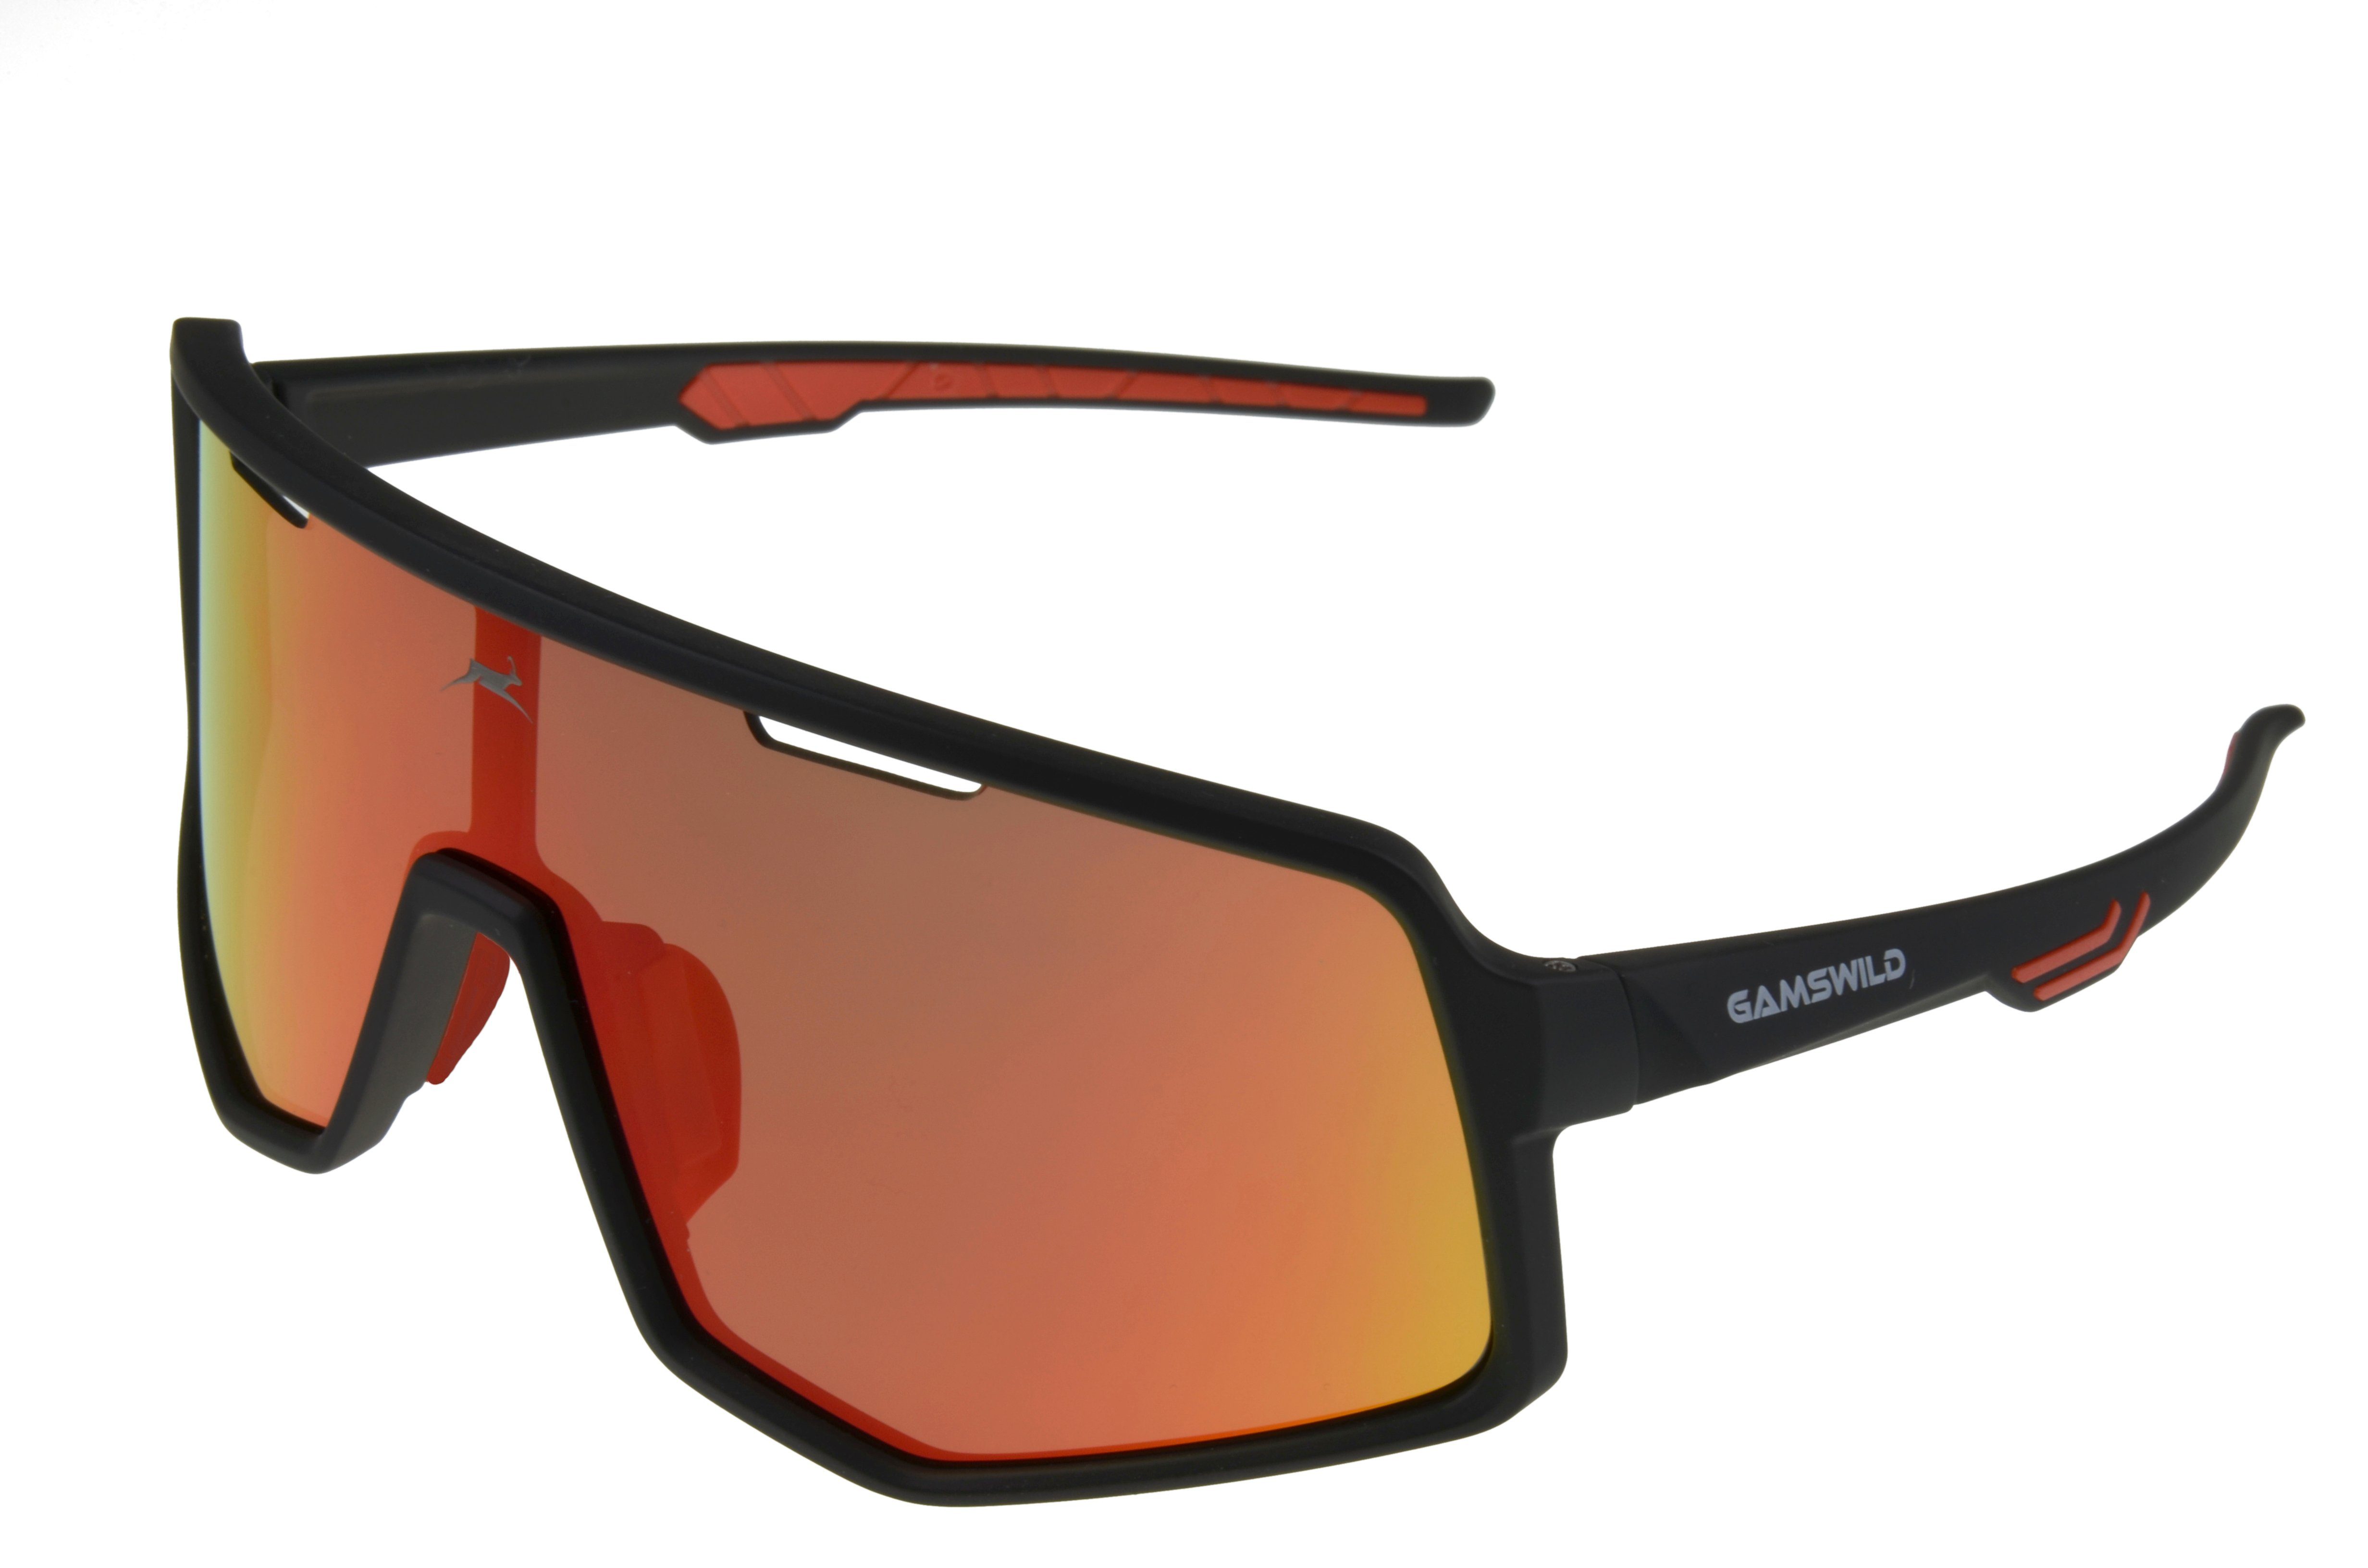 Gamswild Sonnenbrille WS4042 Sonnenbrille Fahrradbrille Skibrille Damen Herren Unisex TR90 Unisex, lila, schwarz-blau, schwarz-rot, grün